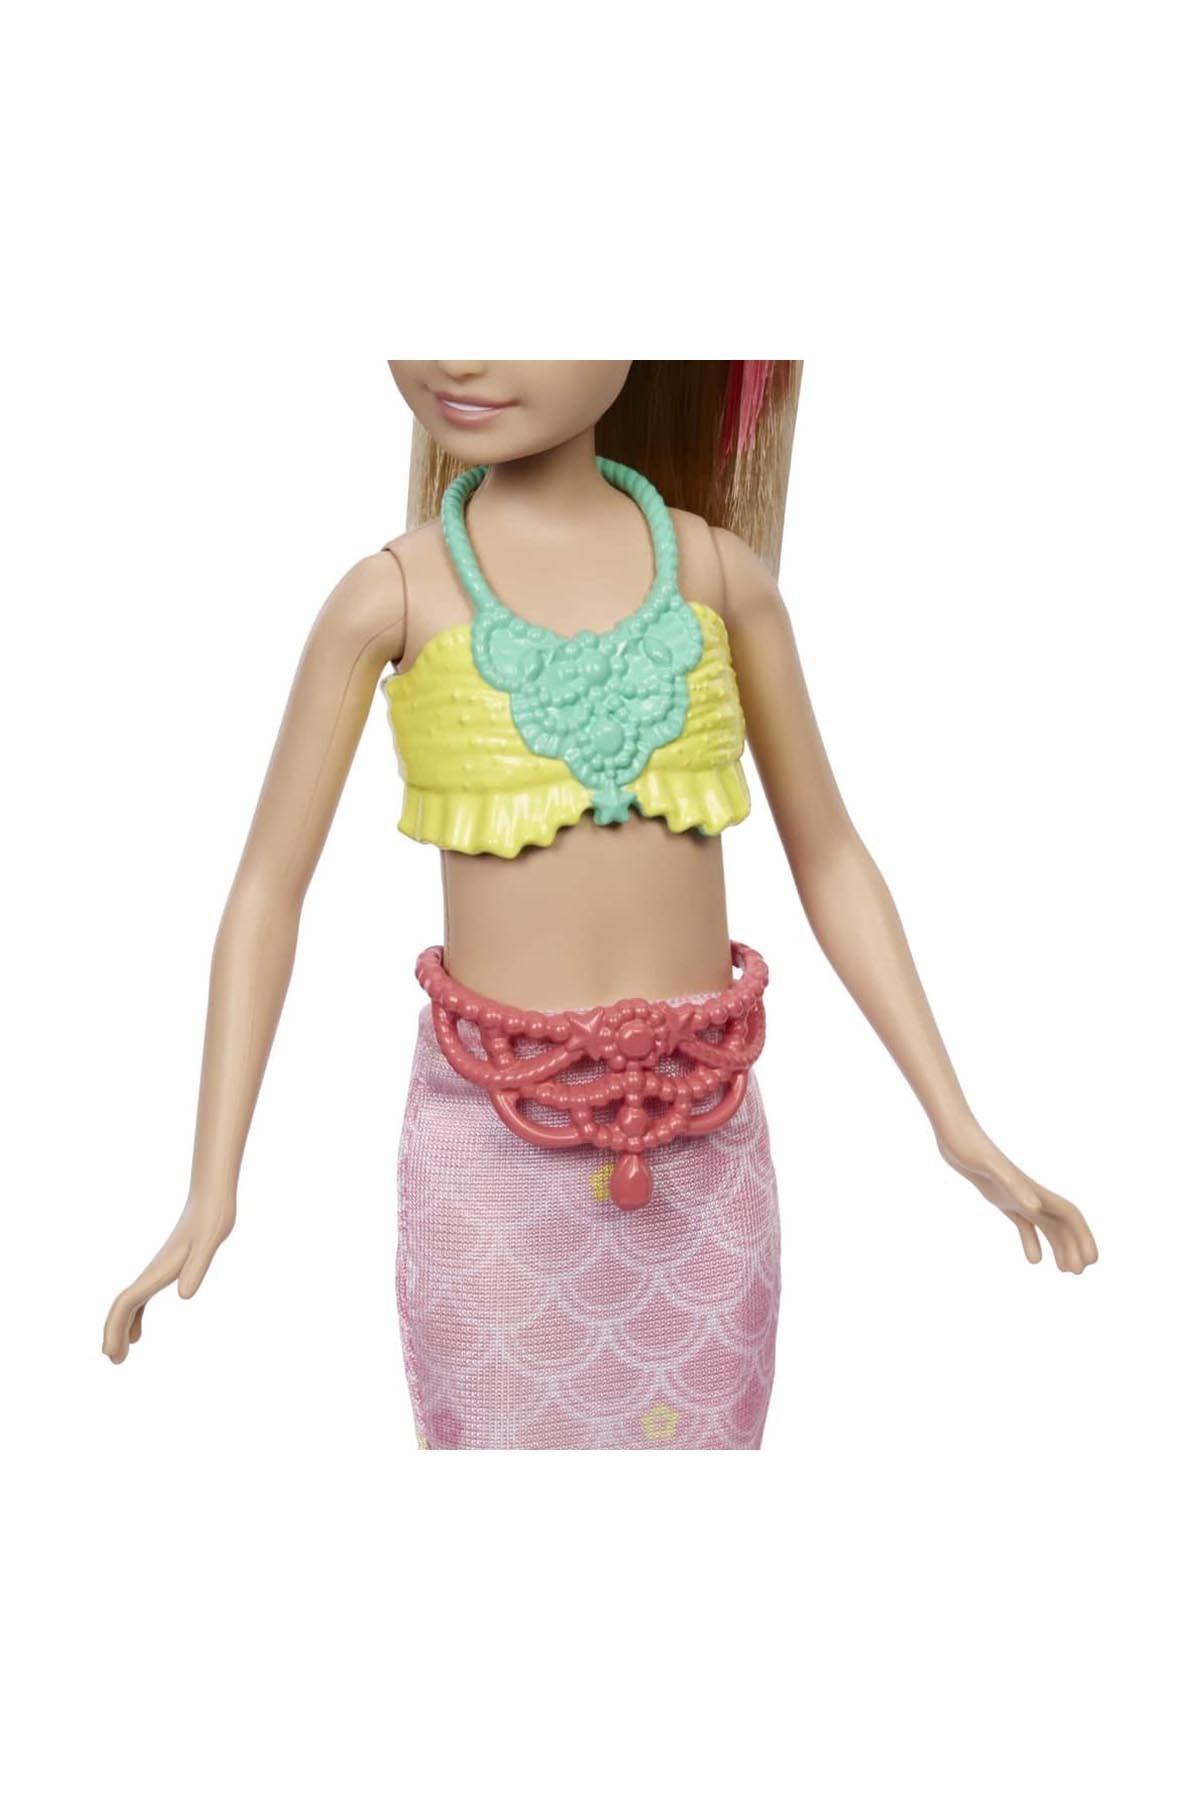 Barbie'nin Kız Kardeşleri Deniz Kızı Oluyor Oyun Setleri